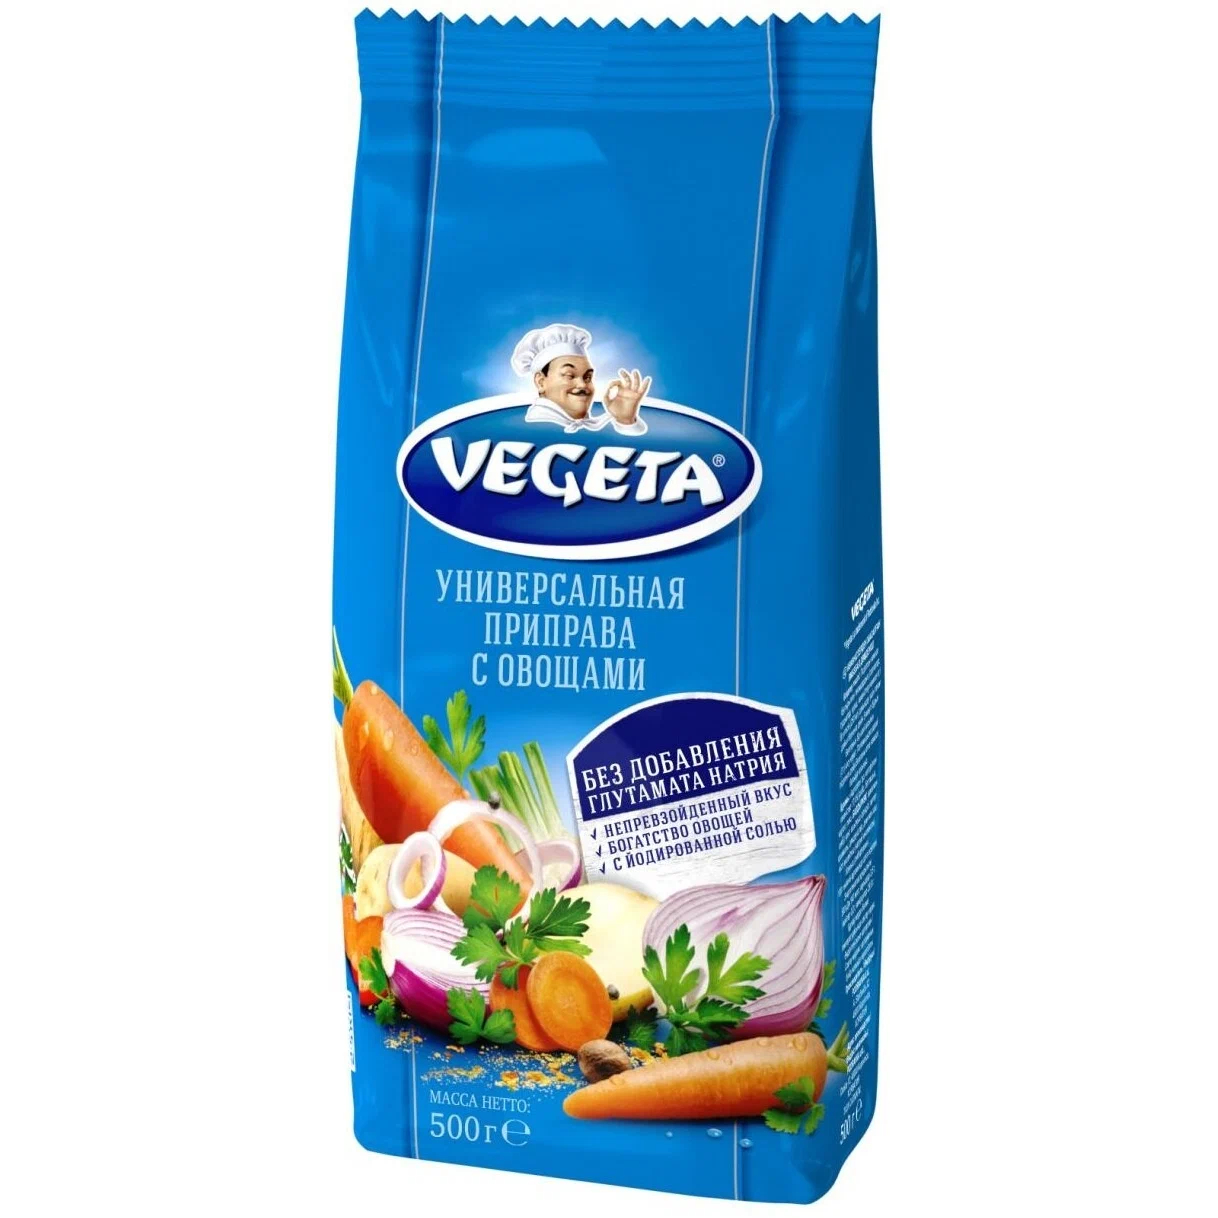 Приправа универсальная Vegeta с овощами 500 г приправа metro chef для курицы 800 гр